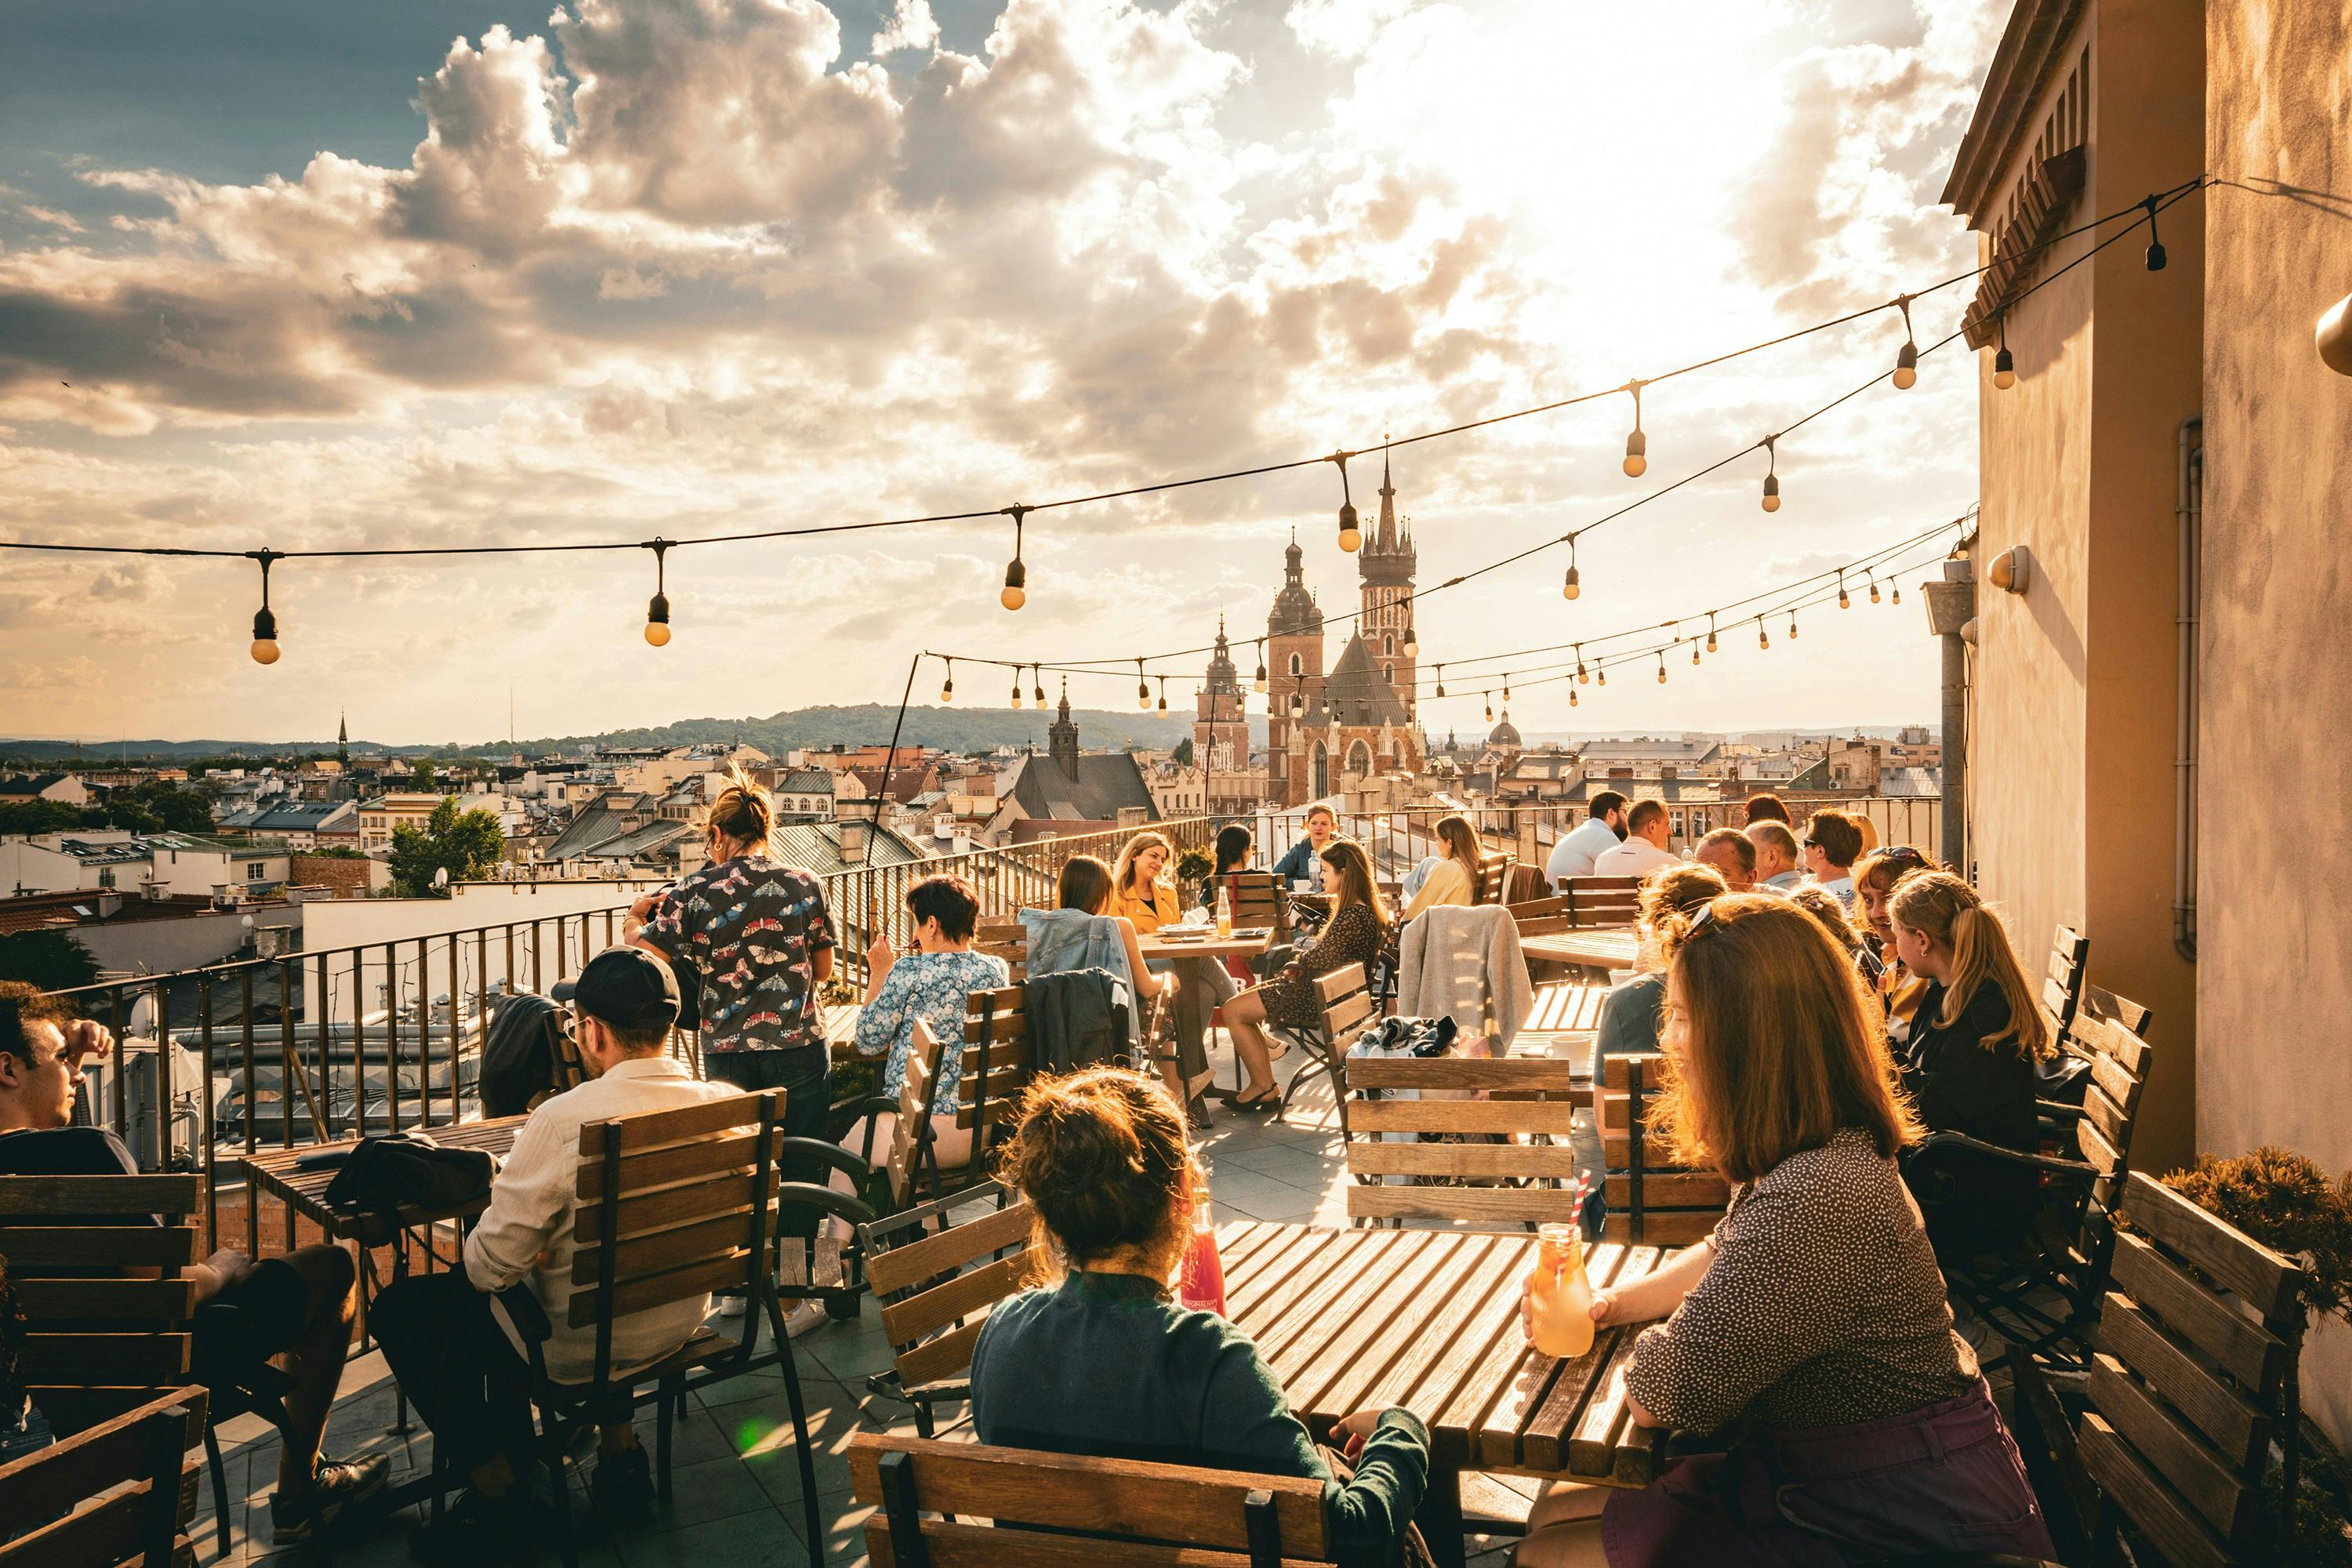 Koszty życia w Krakowie - ile zapłacisz za życie w tym mieście? itMatch Blog Post